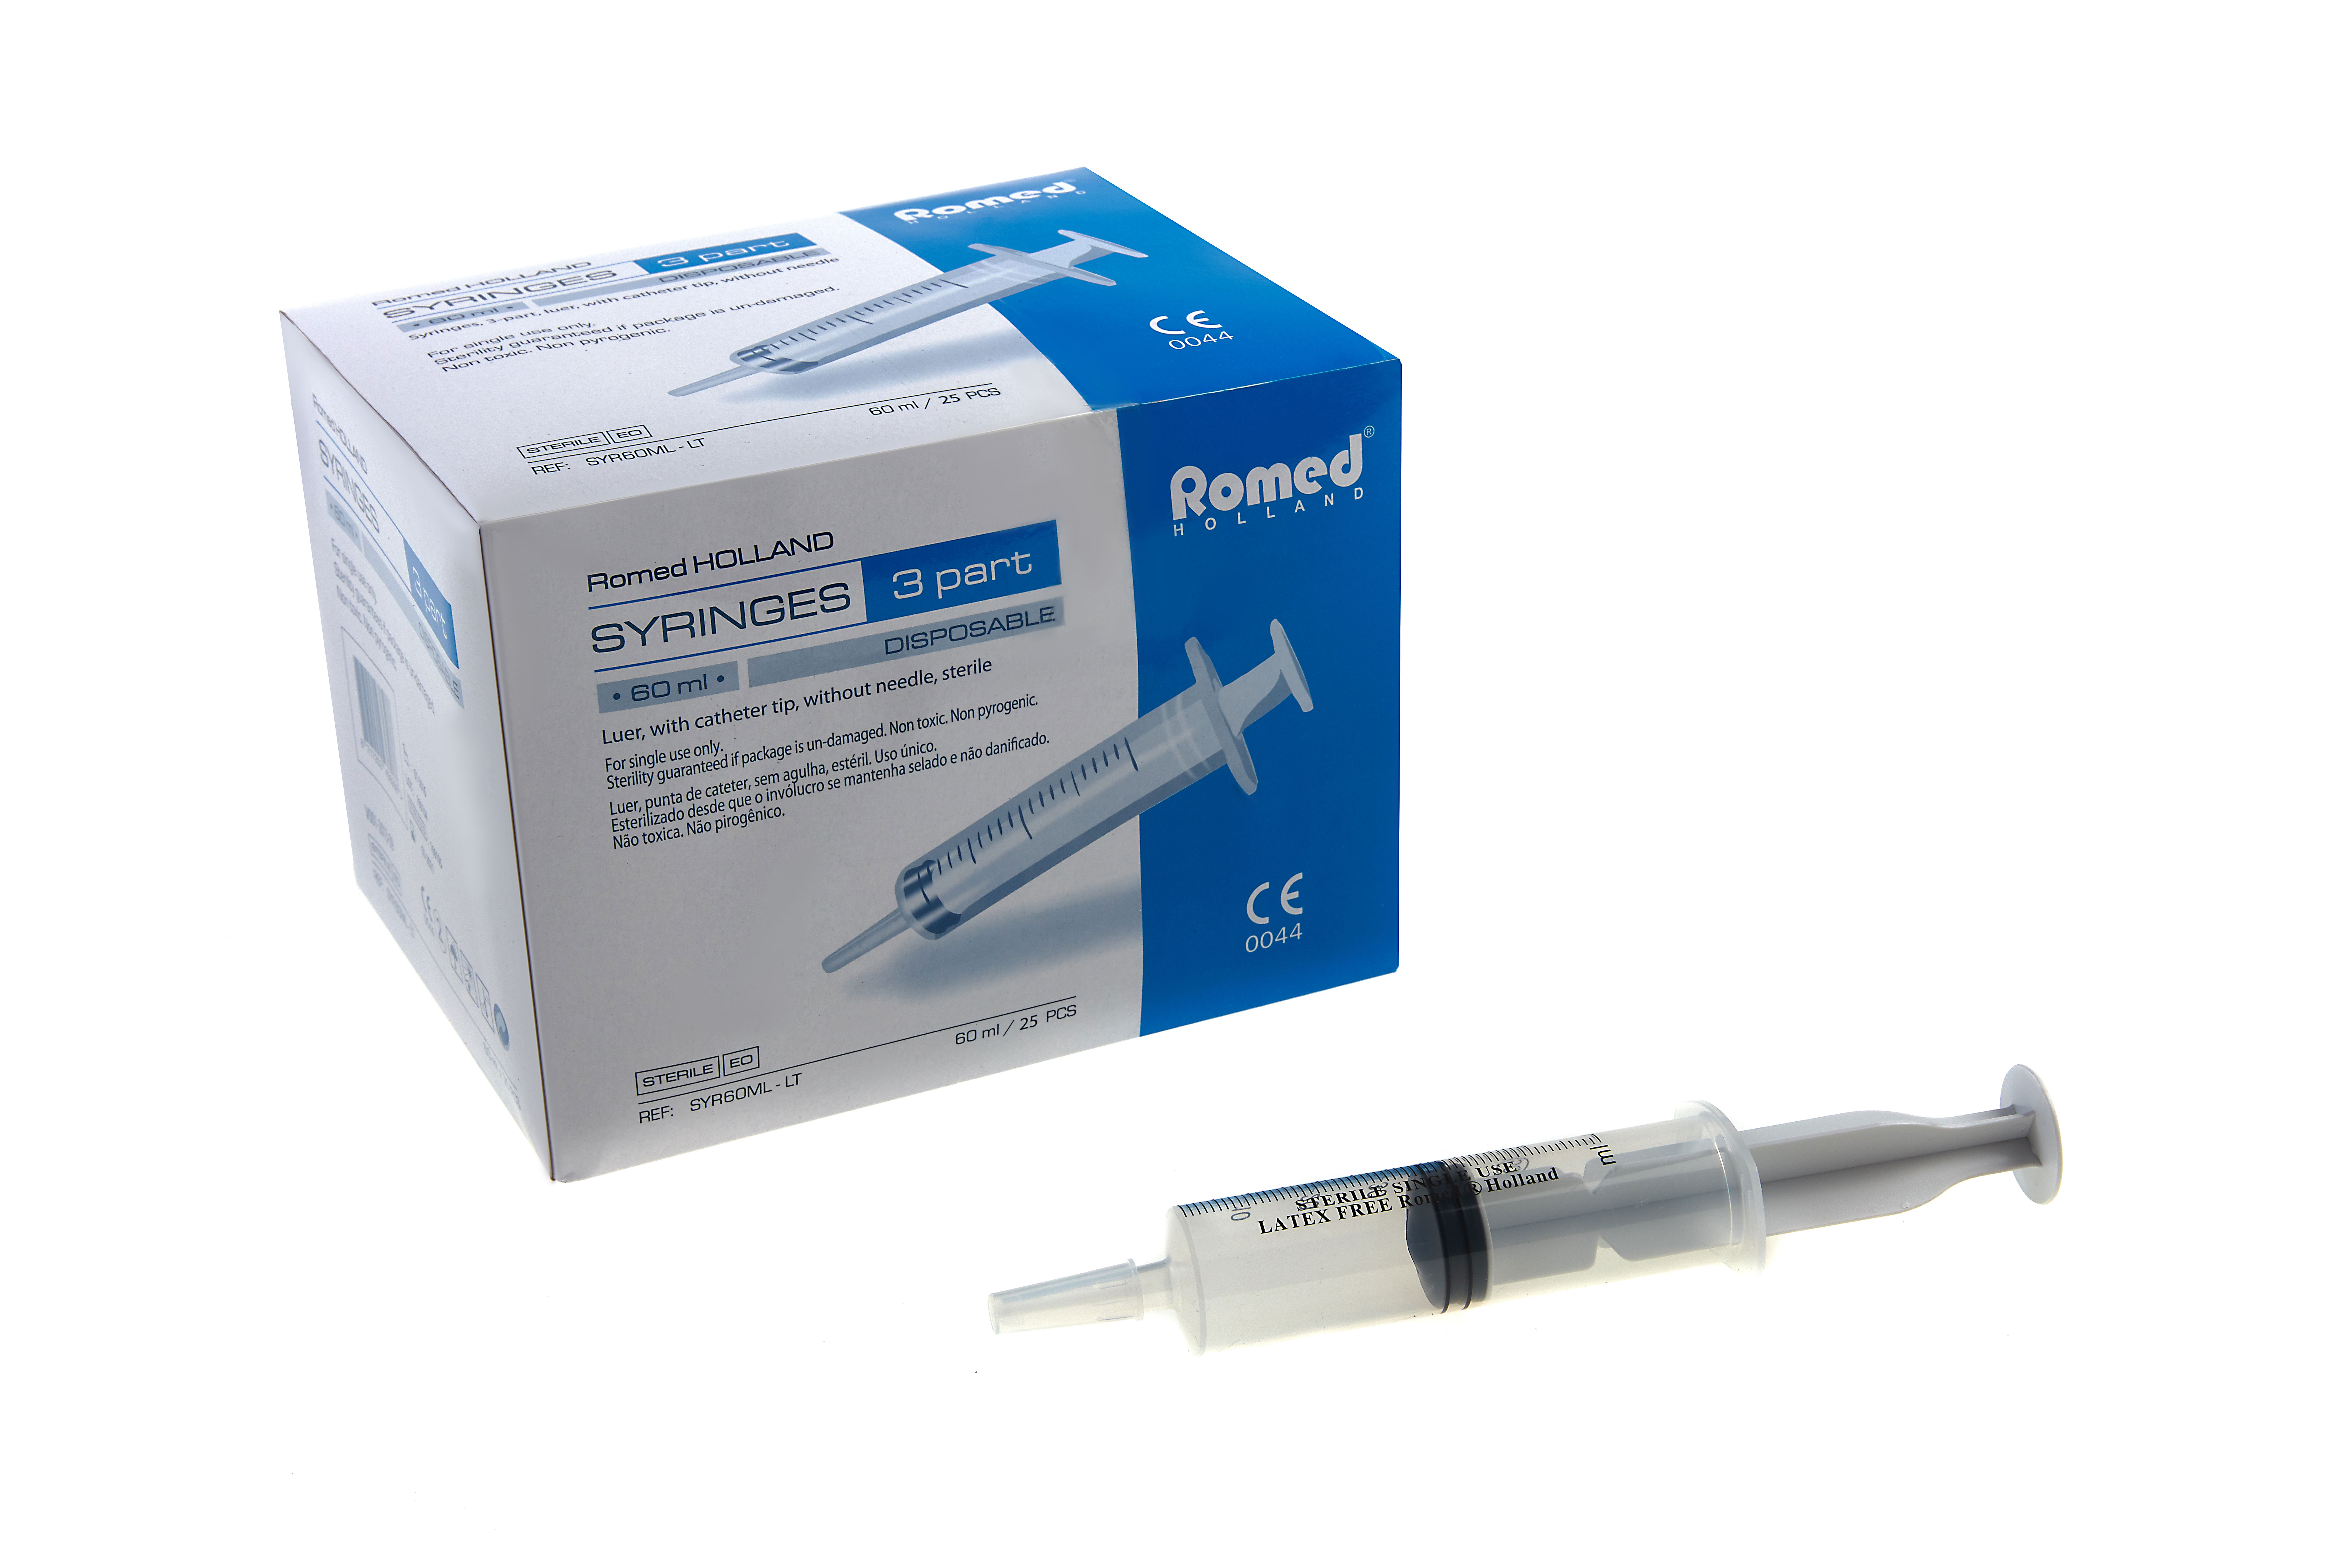 SYR60ML-LT Romed 3-teilige Spritzen 60 ml ohne Kanüle, katheter tip, pro Stück steril verpackt, pro 25 Stück in einer Schachtel, 16 x 25 Stück = 400 Stück im Karton.